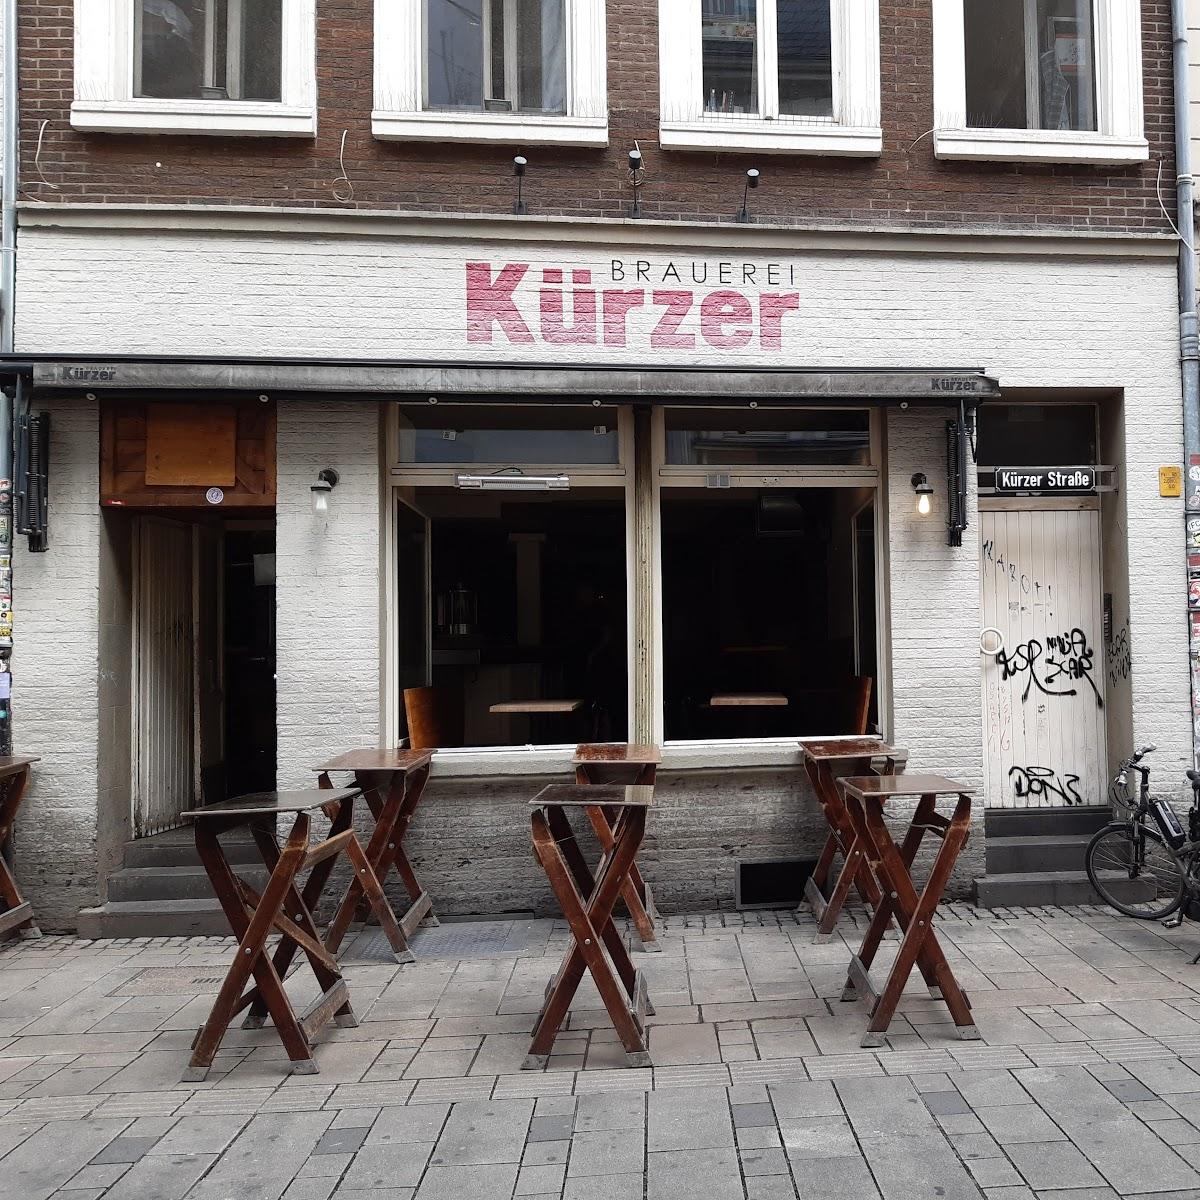 Restaurant "Brauerei Kürzer" in Düsseldorf